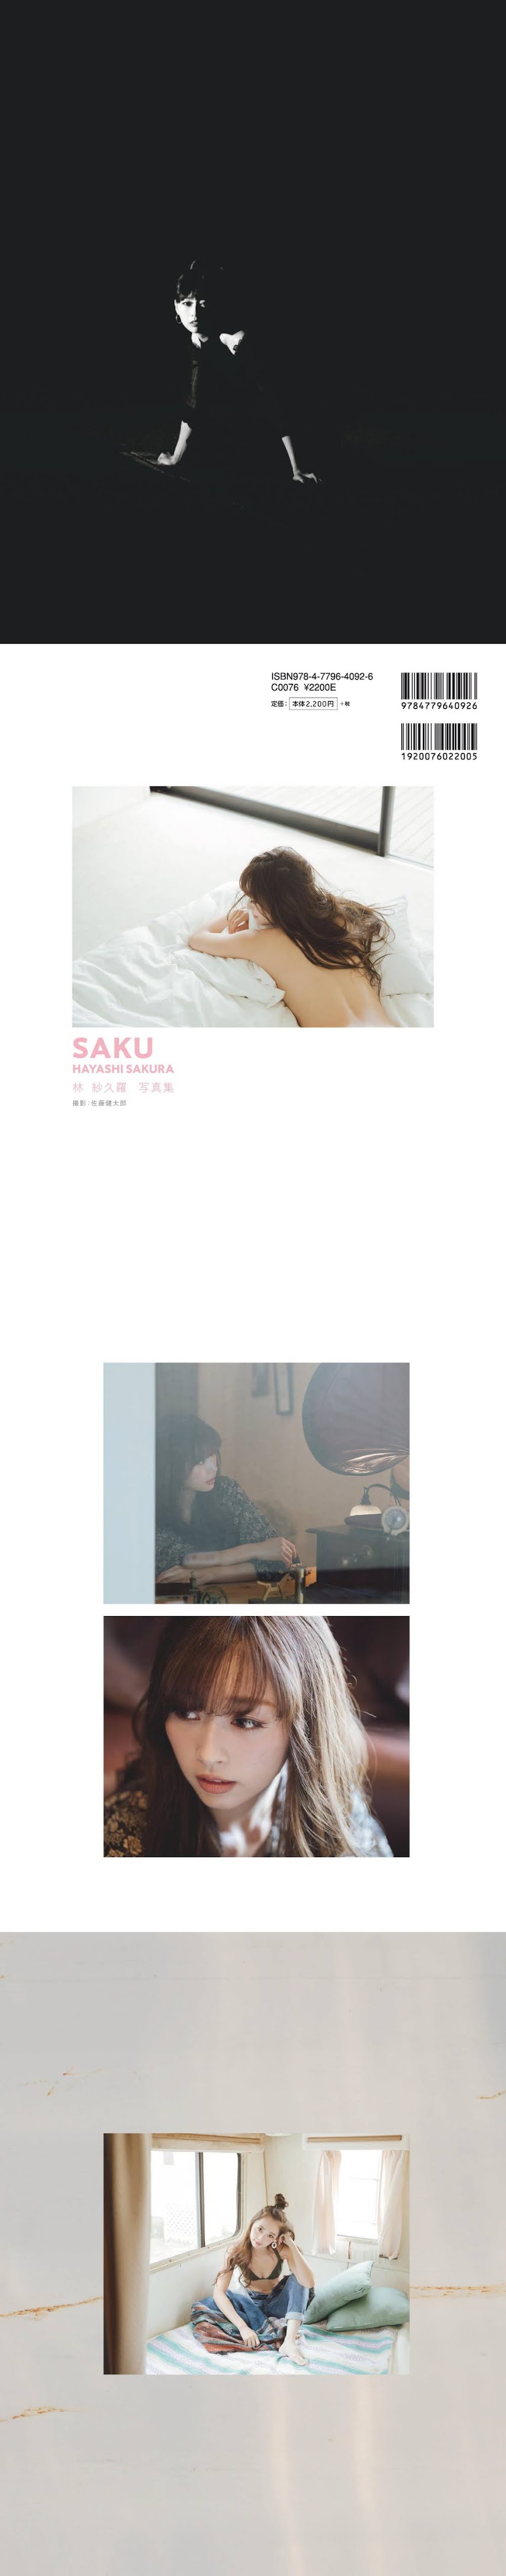 [Digital Photobook] Sakura Hayashi 林紗久羅 - SAKU (2019-12-26)   P214542